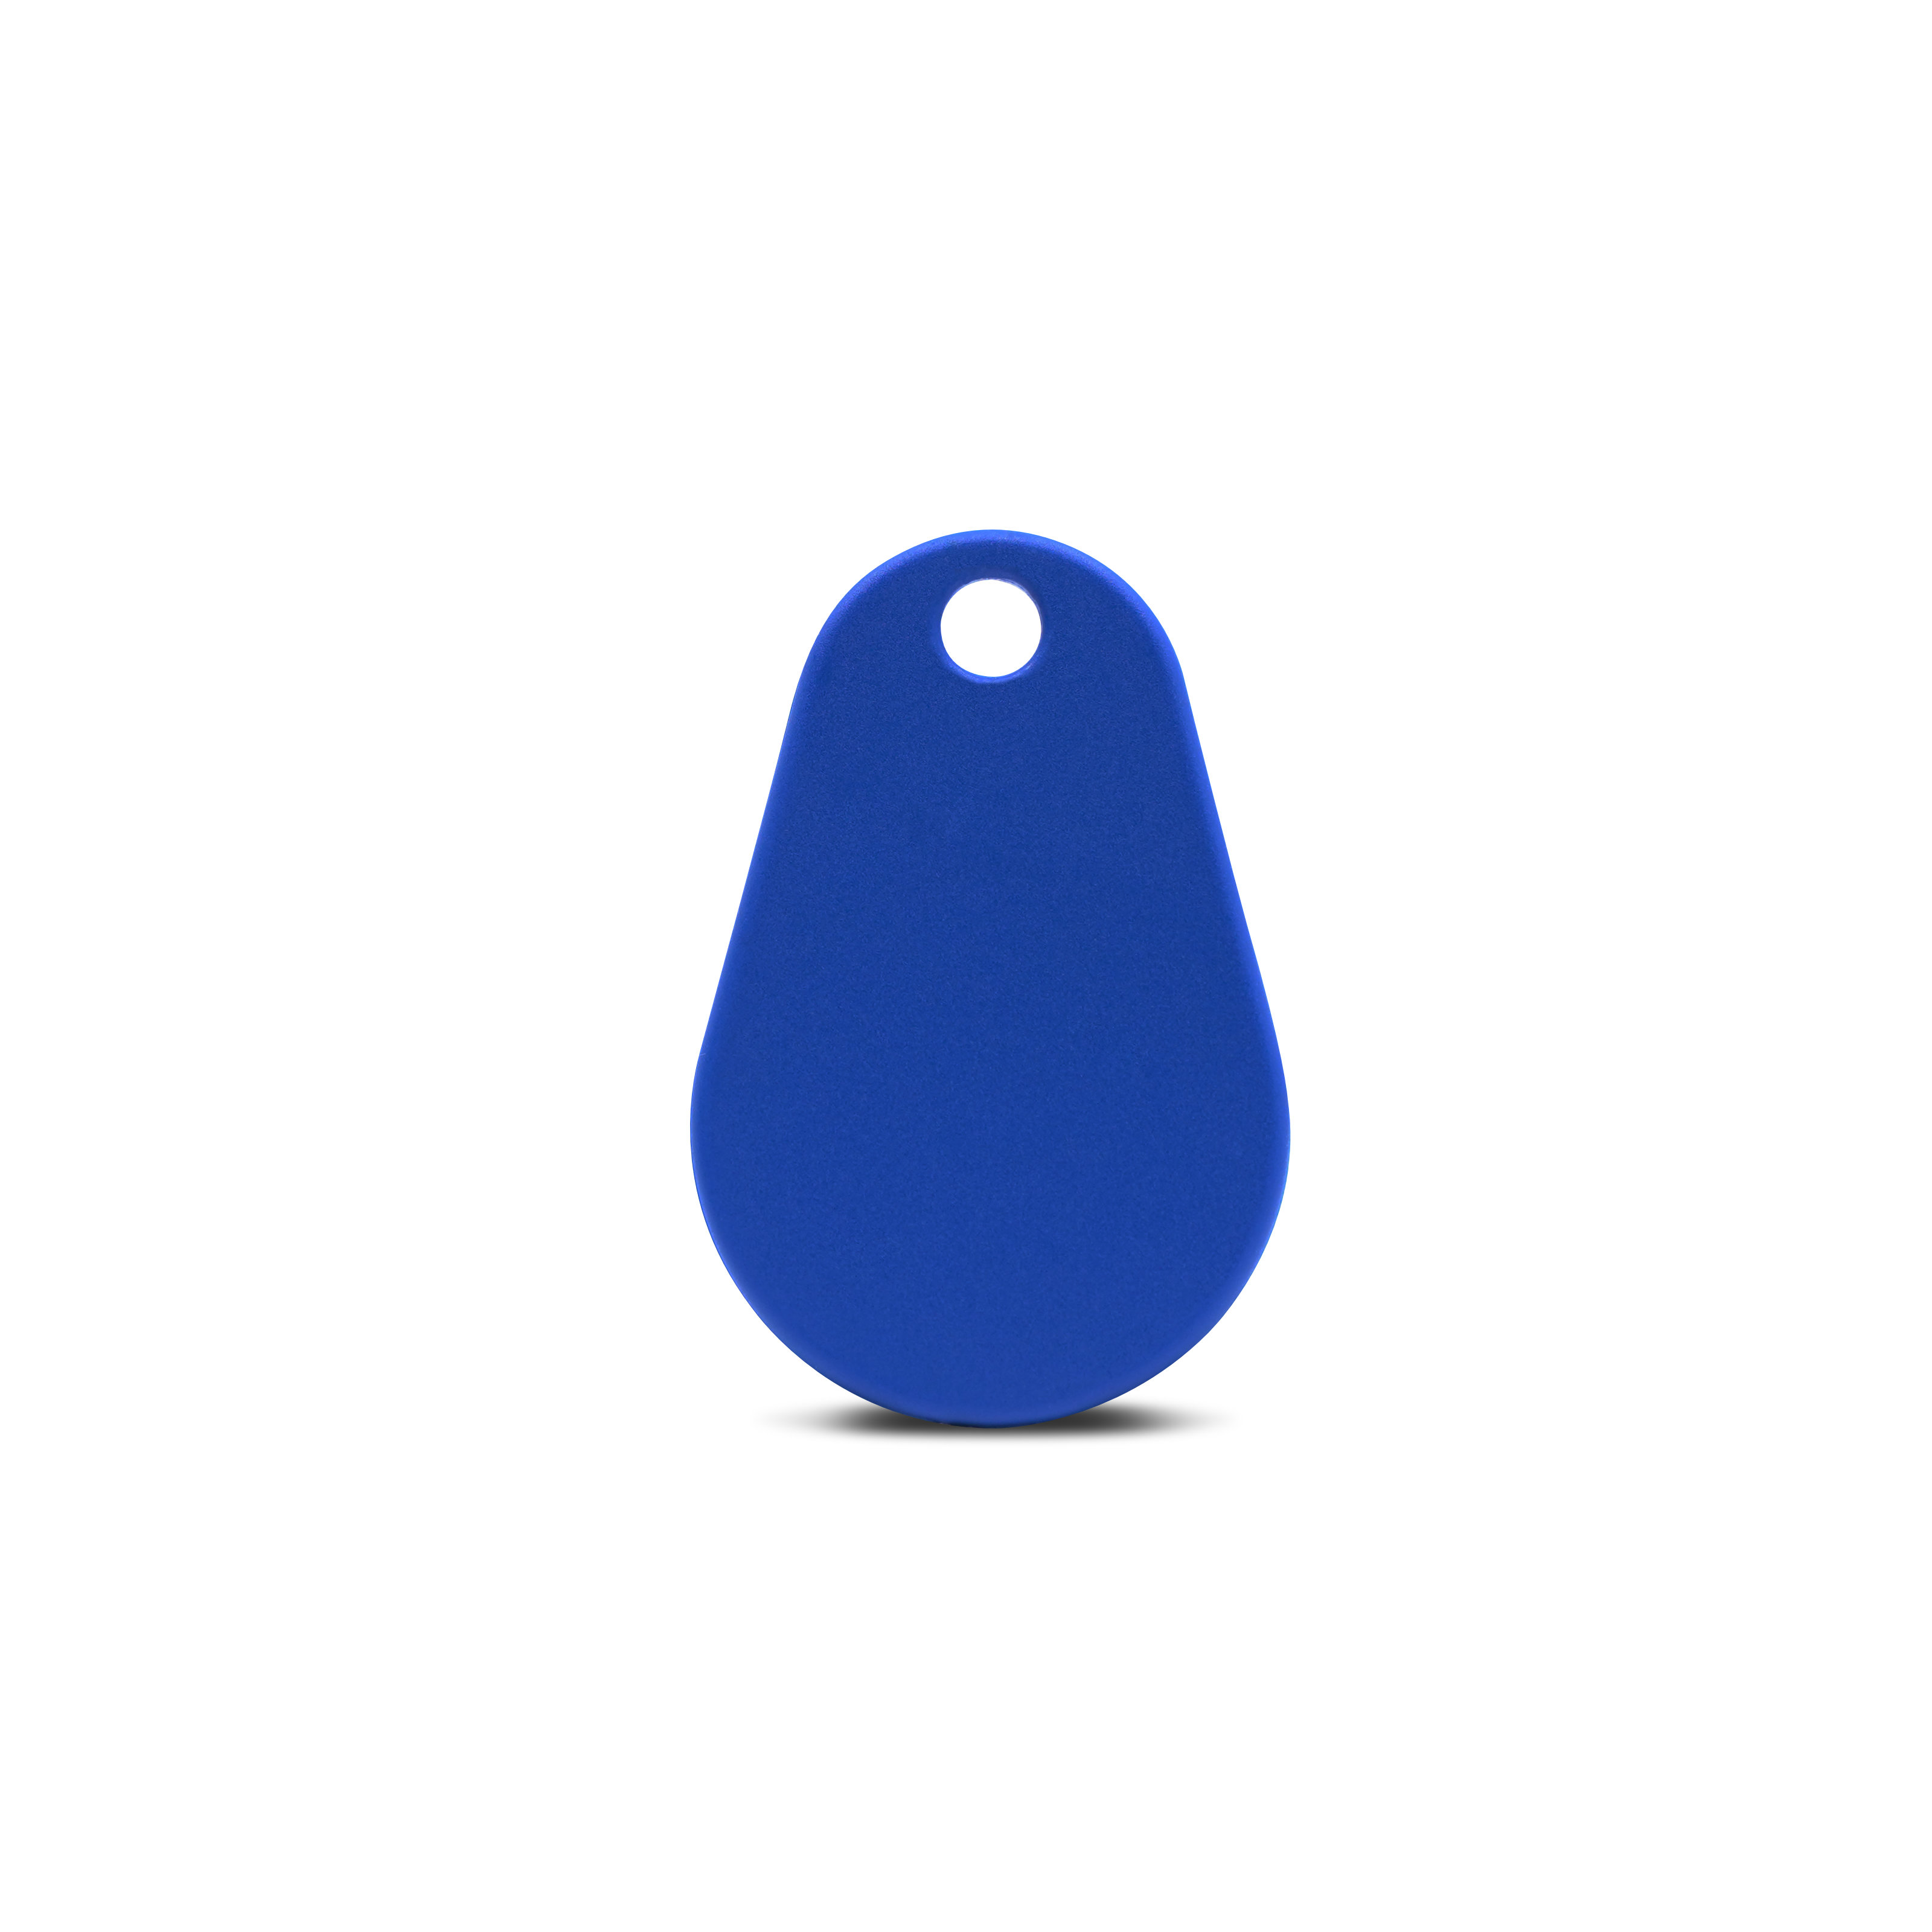 Vorderseite NFC Schlüsselanhänger in blau aus Polyamid